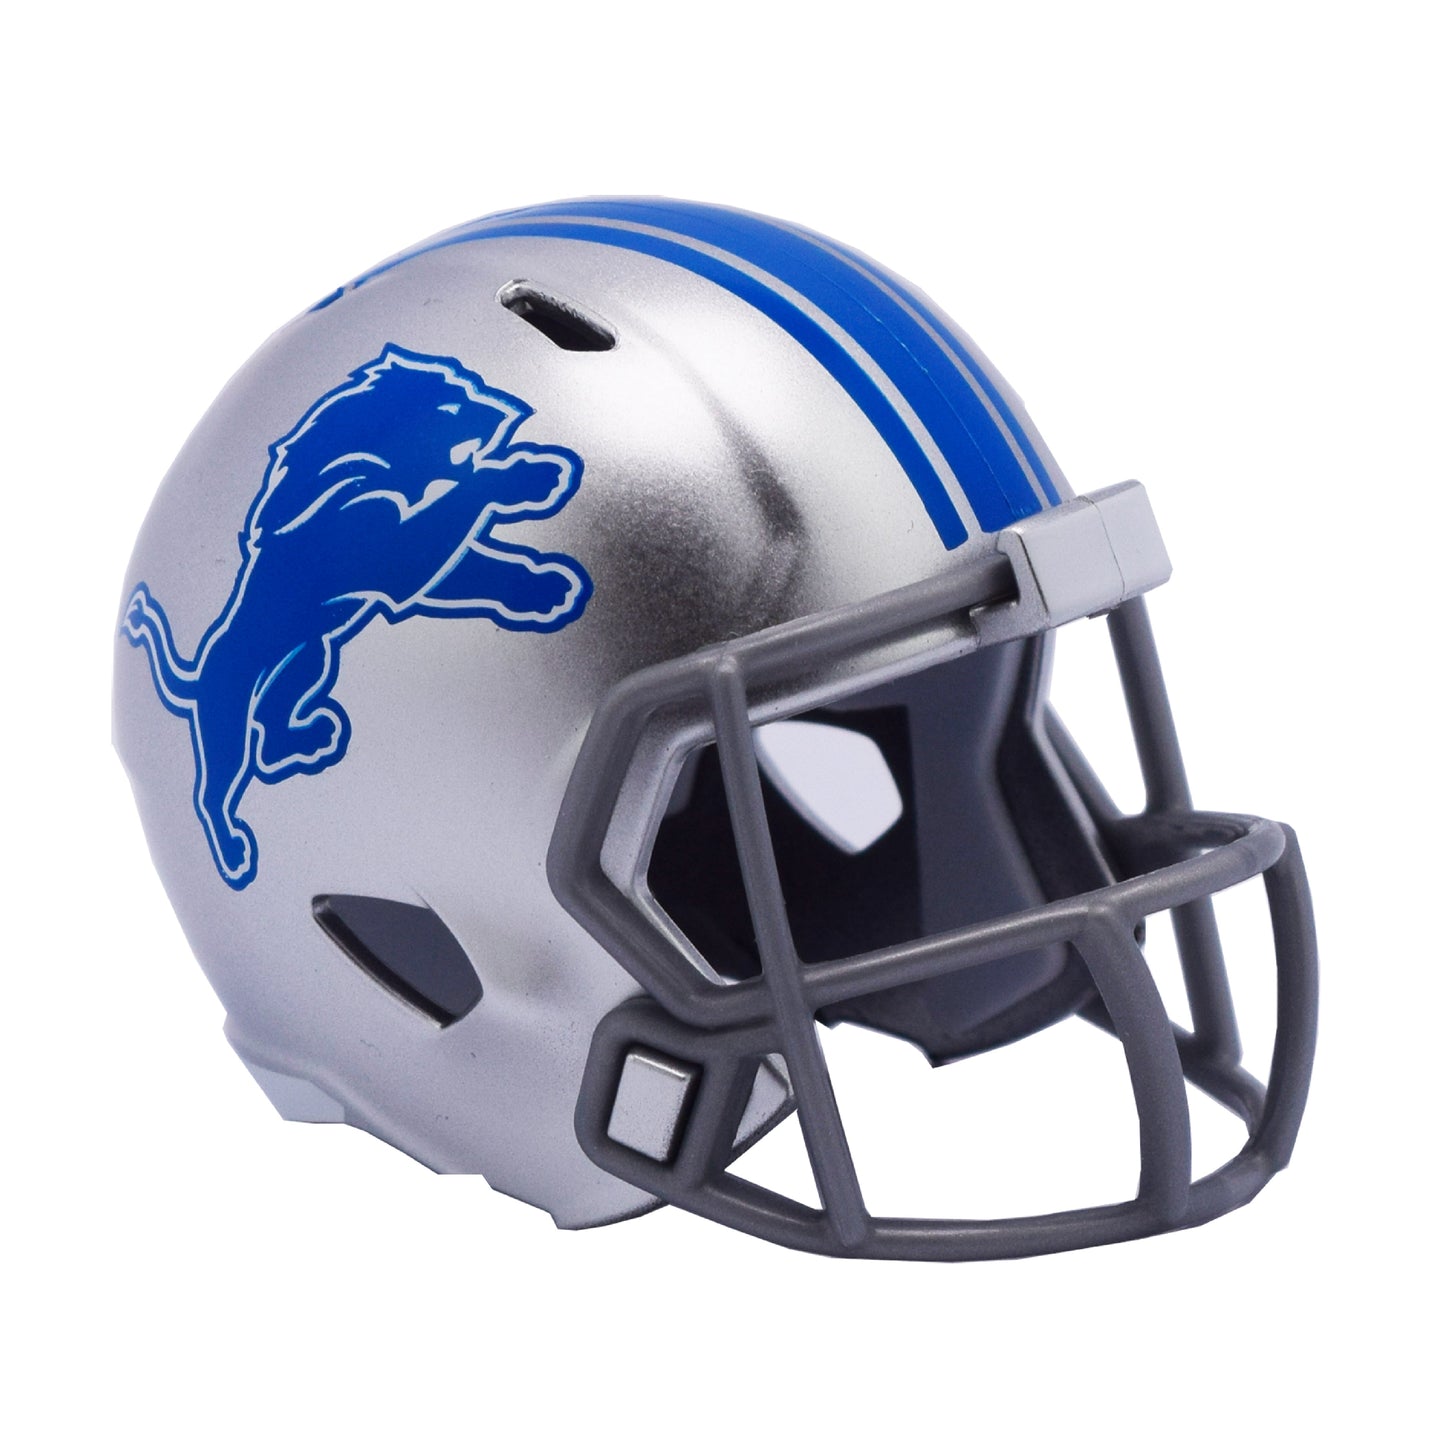 Detroit Lions Riddell Speed Pocket Pro Football Helmet